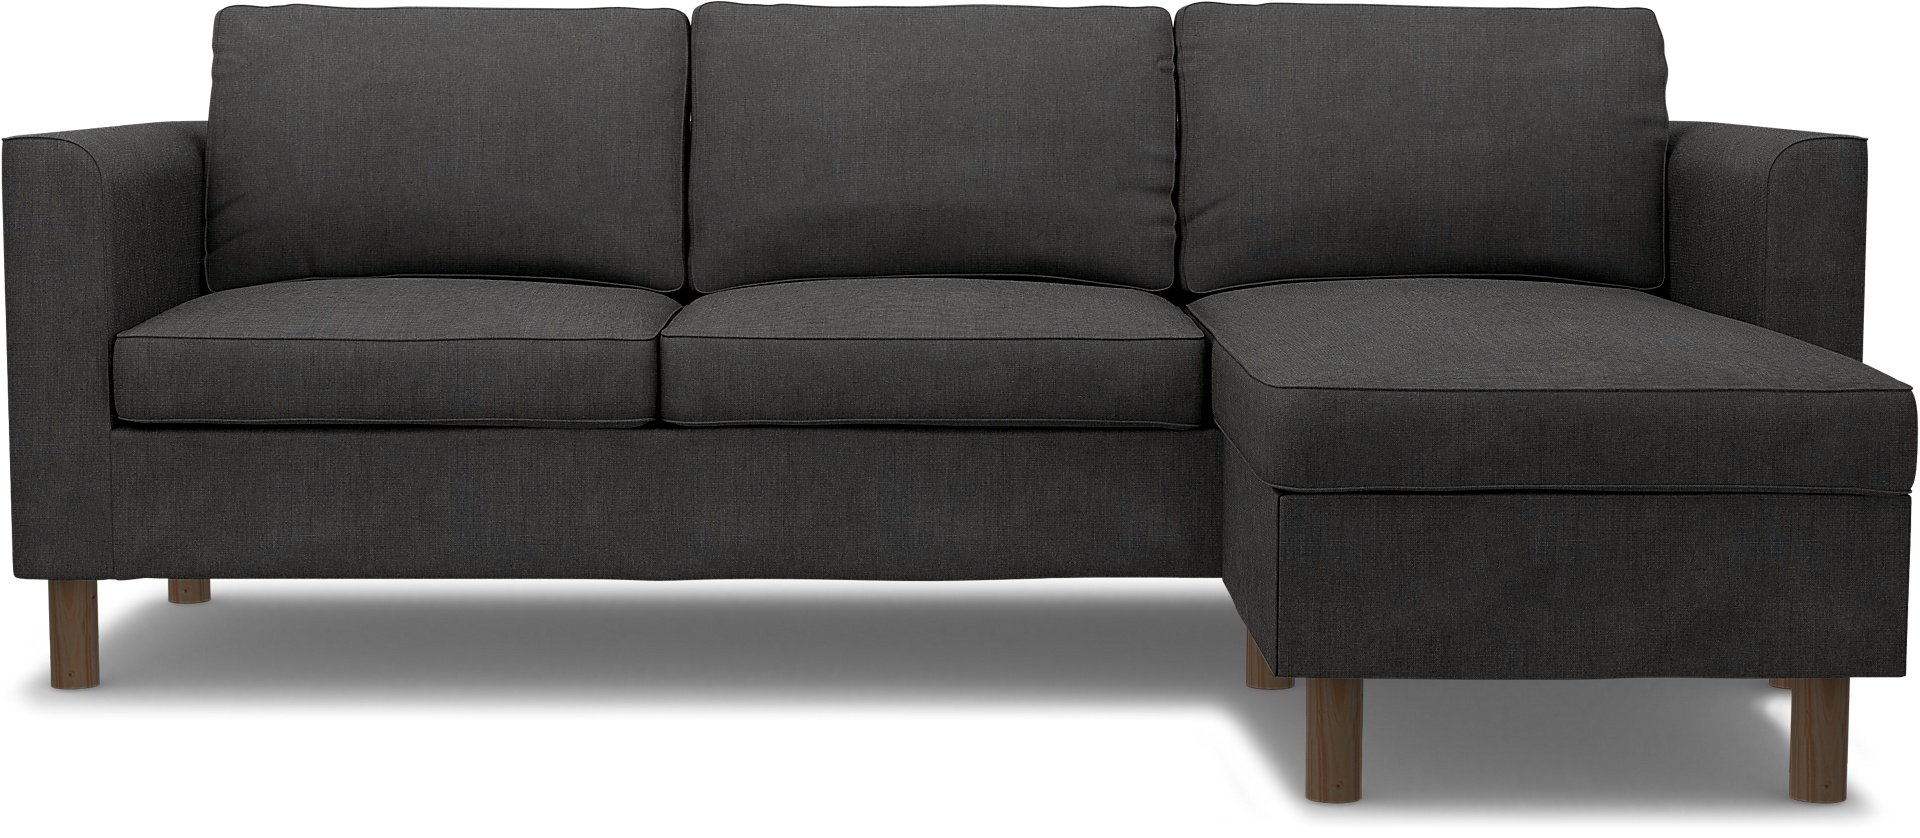 IKEA - Parup 3 Seater with chaise longue, Espresso, Linen - Bemz